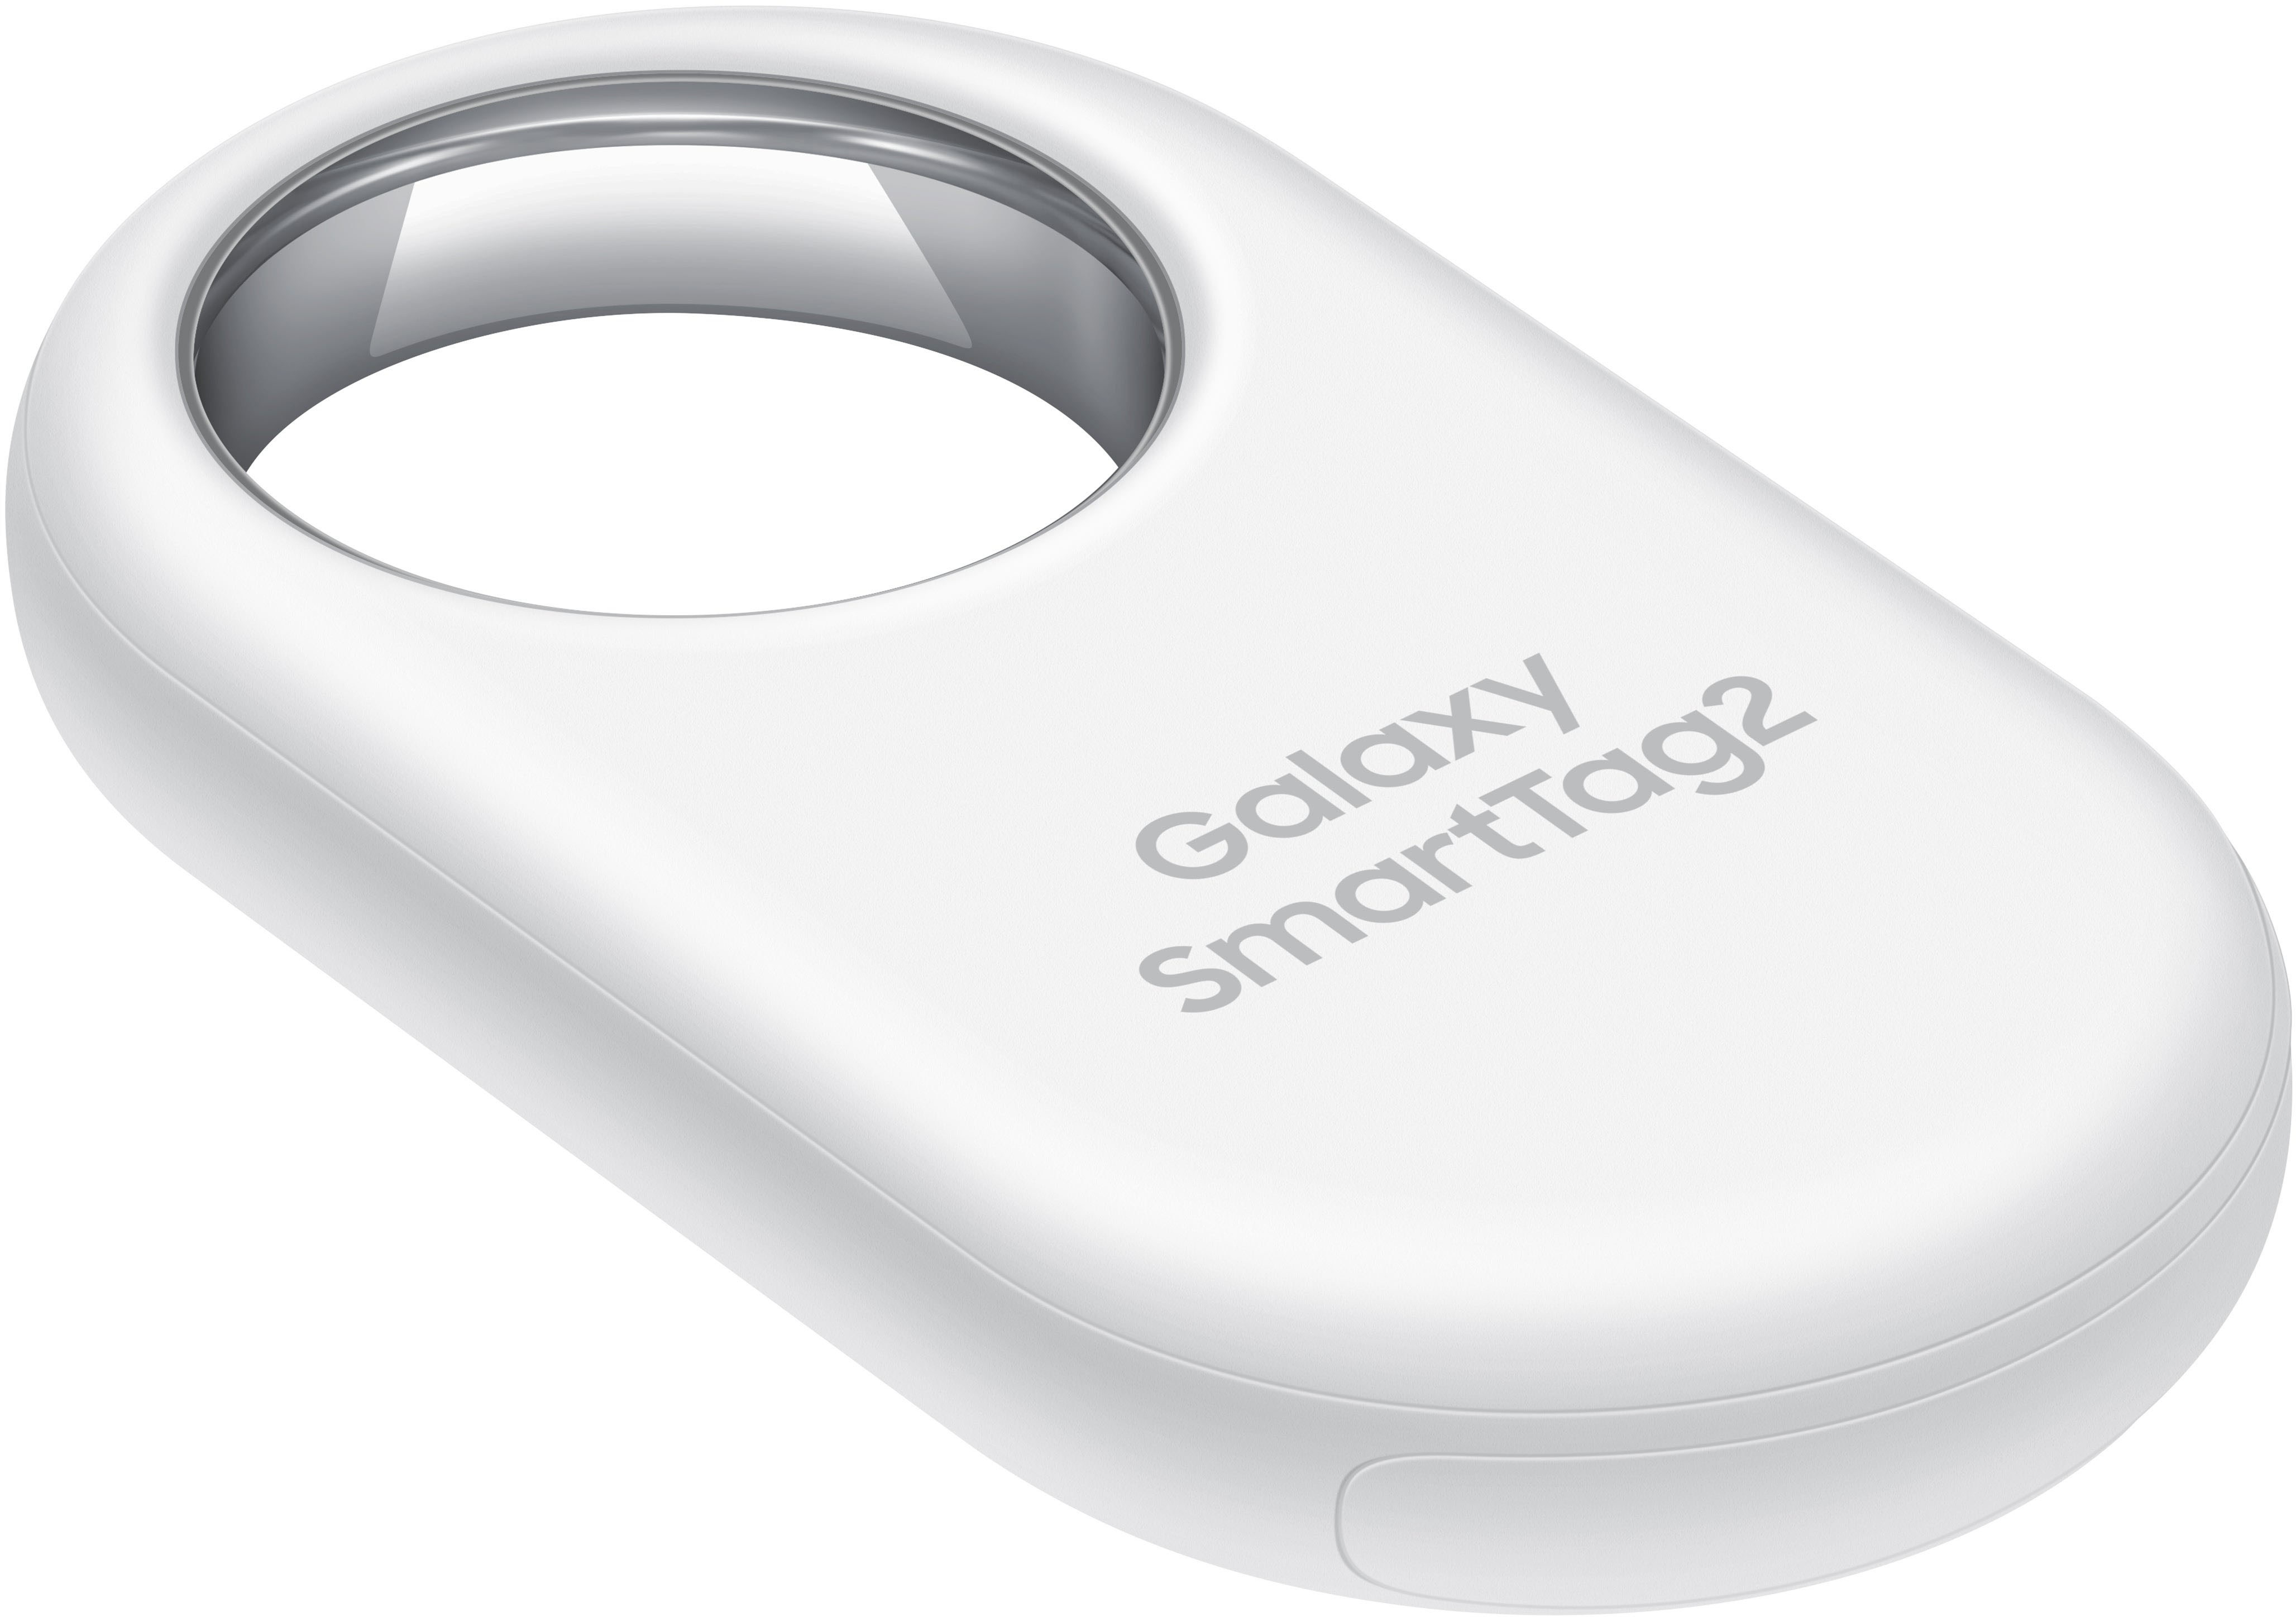 Samsung Galaxy SmartTag2 Black EI-T5600BBEGUS - Best Buy